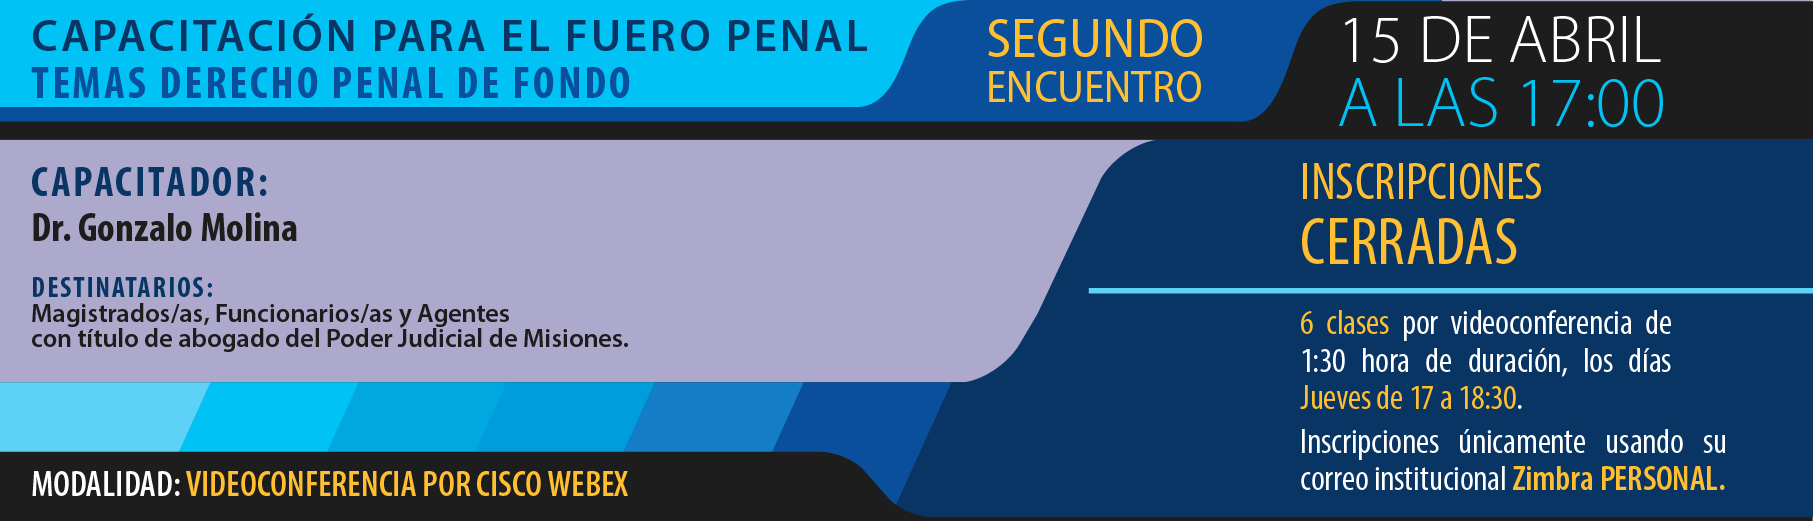 InC_P2_curso_cap_fuero_penal-01